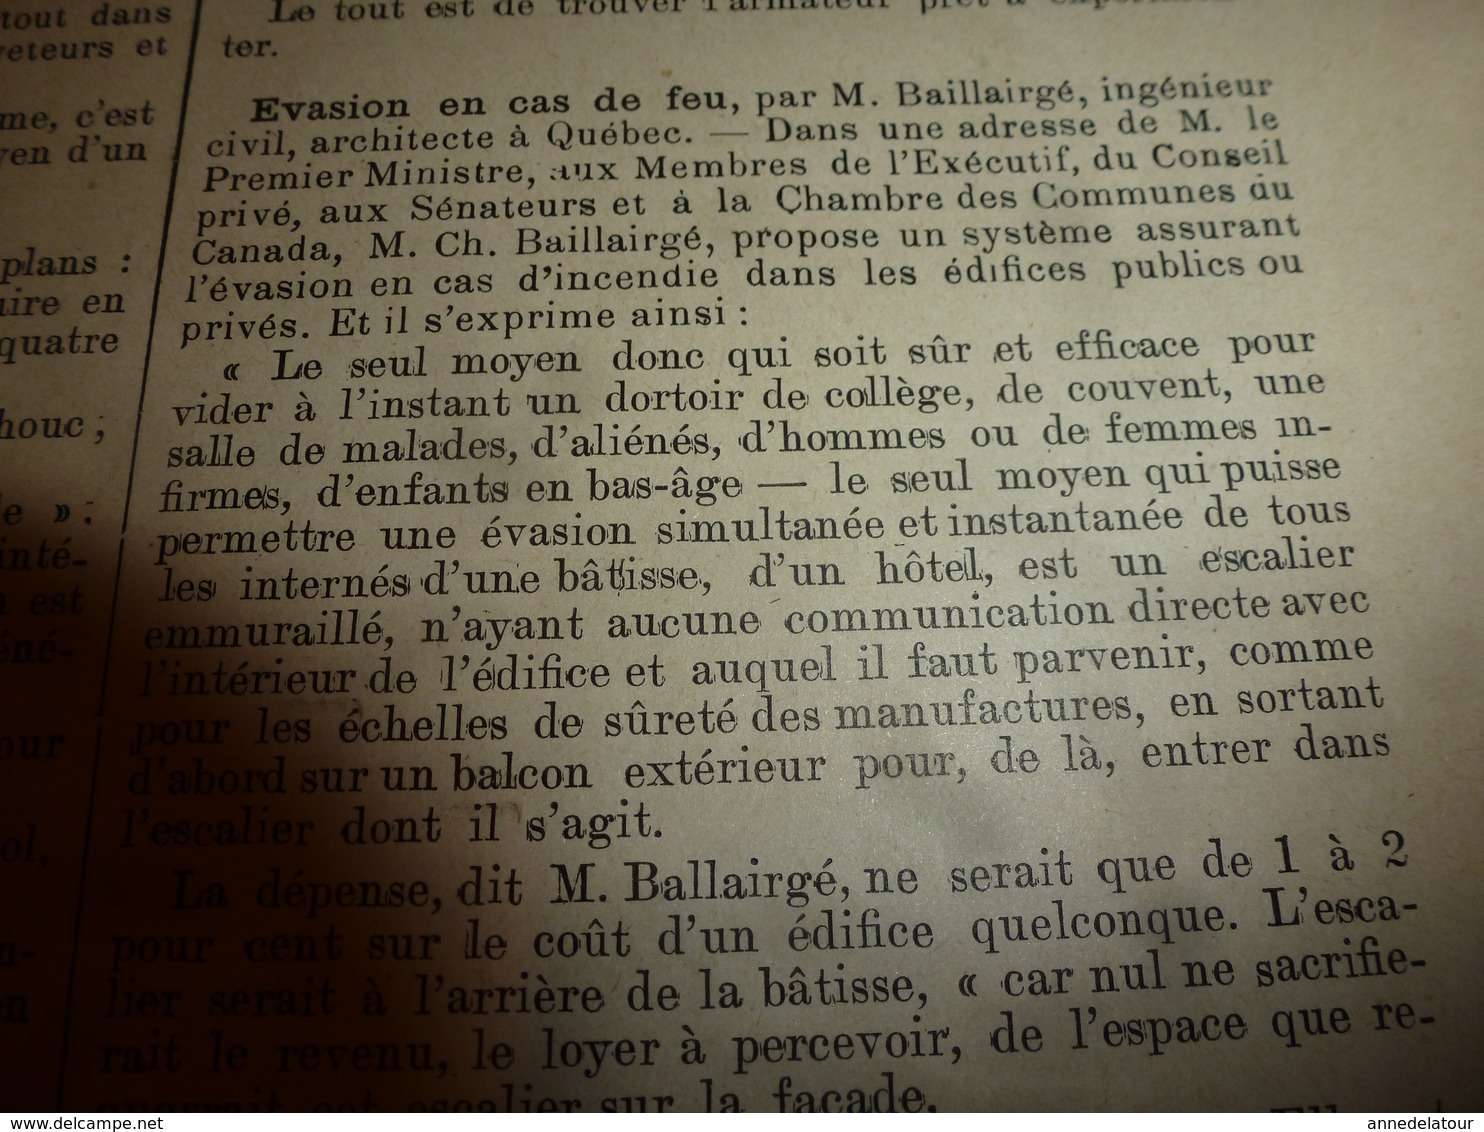 1903 LES INVENTIONS ILLUSTRÉES:Aéro-moteur;Nettoie-fenêtres;Aéromobile;Vélo ni pédales ni chaine;Bâteau inchavirable;etc